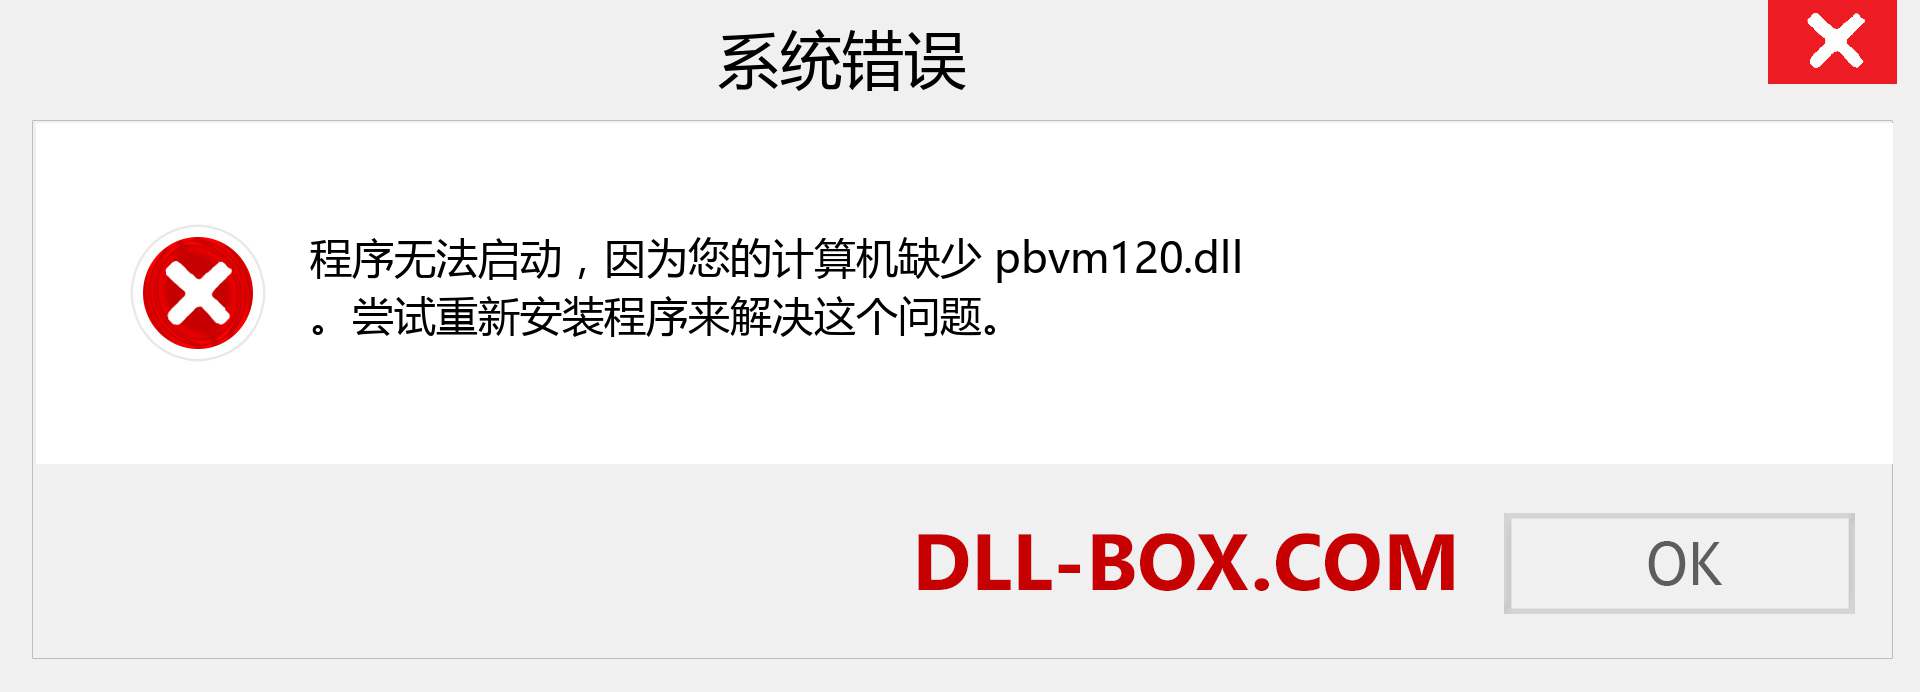 pbvm120.dll 文件丢失？。 适用于 Windows 7、8、10 的下载 - 修复 Windows、照片、图像上的 pbvm120 dll 丢失错误